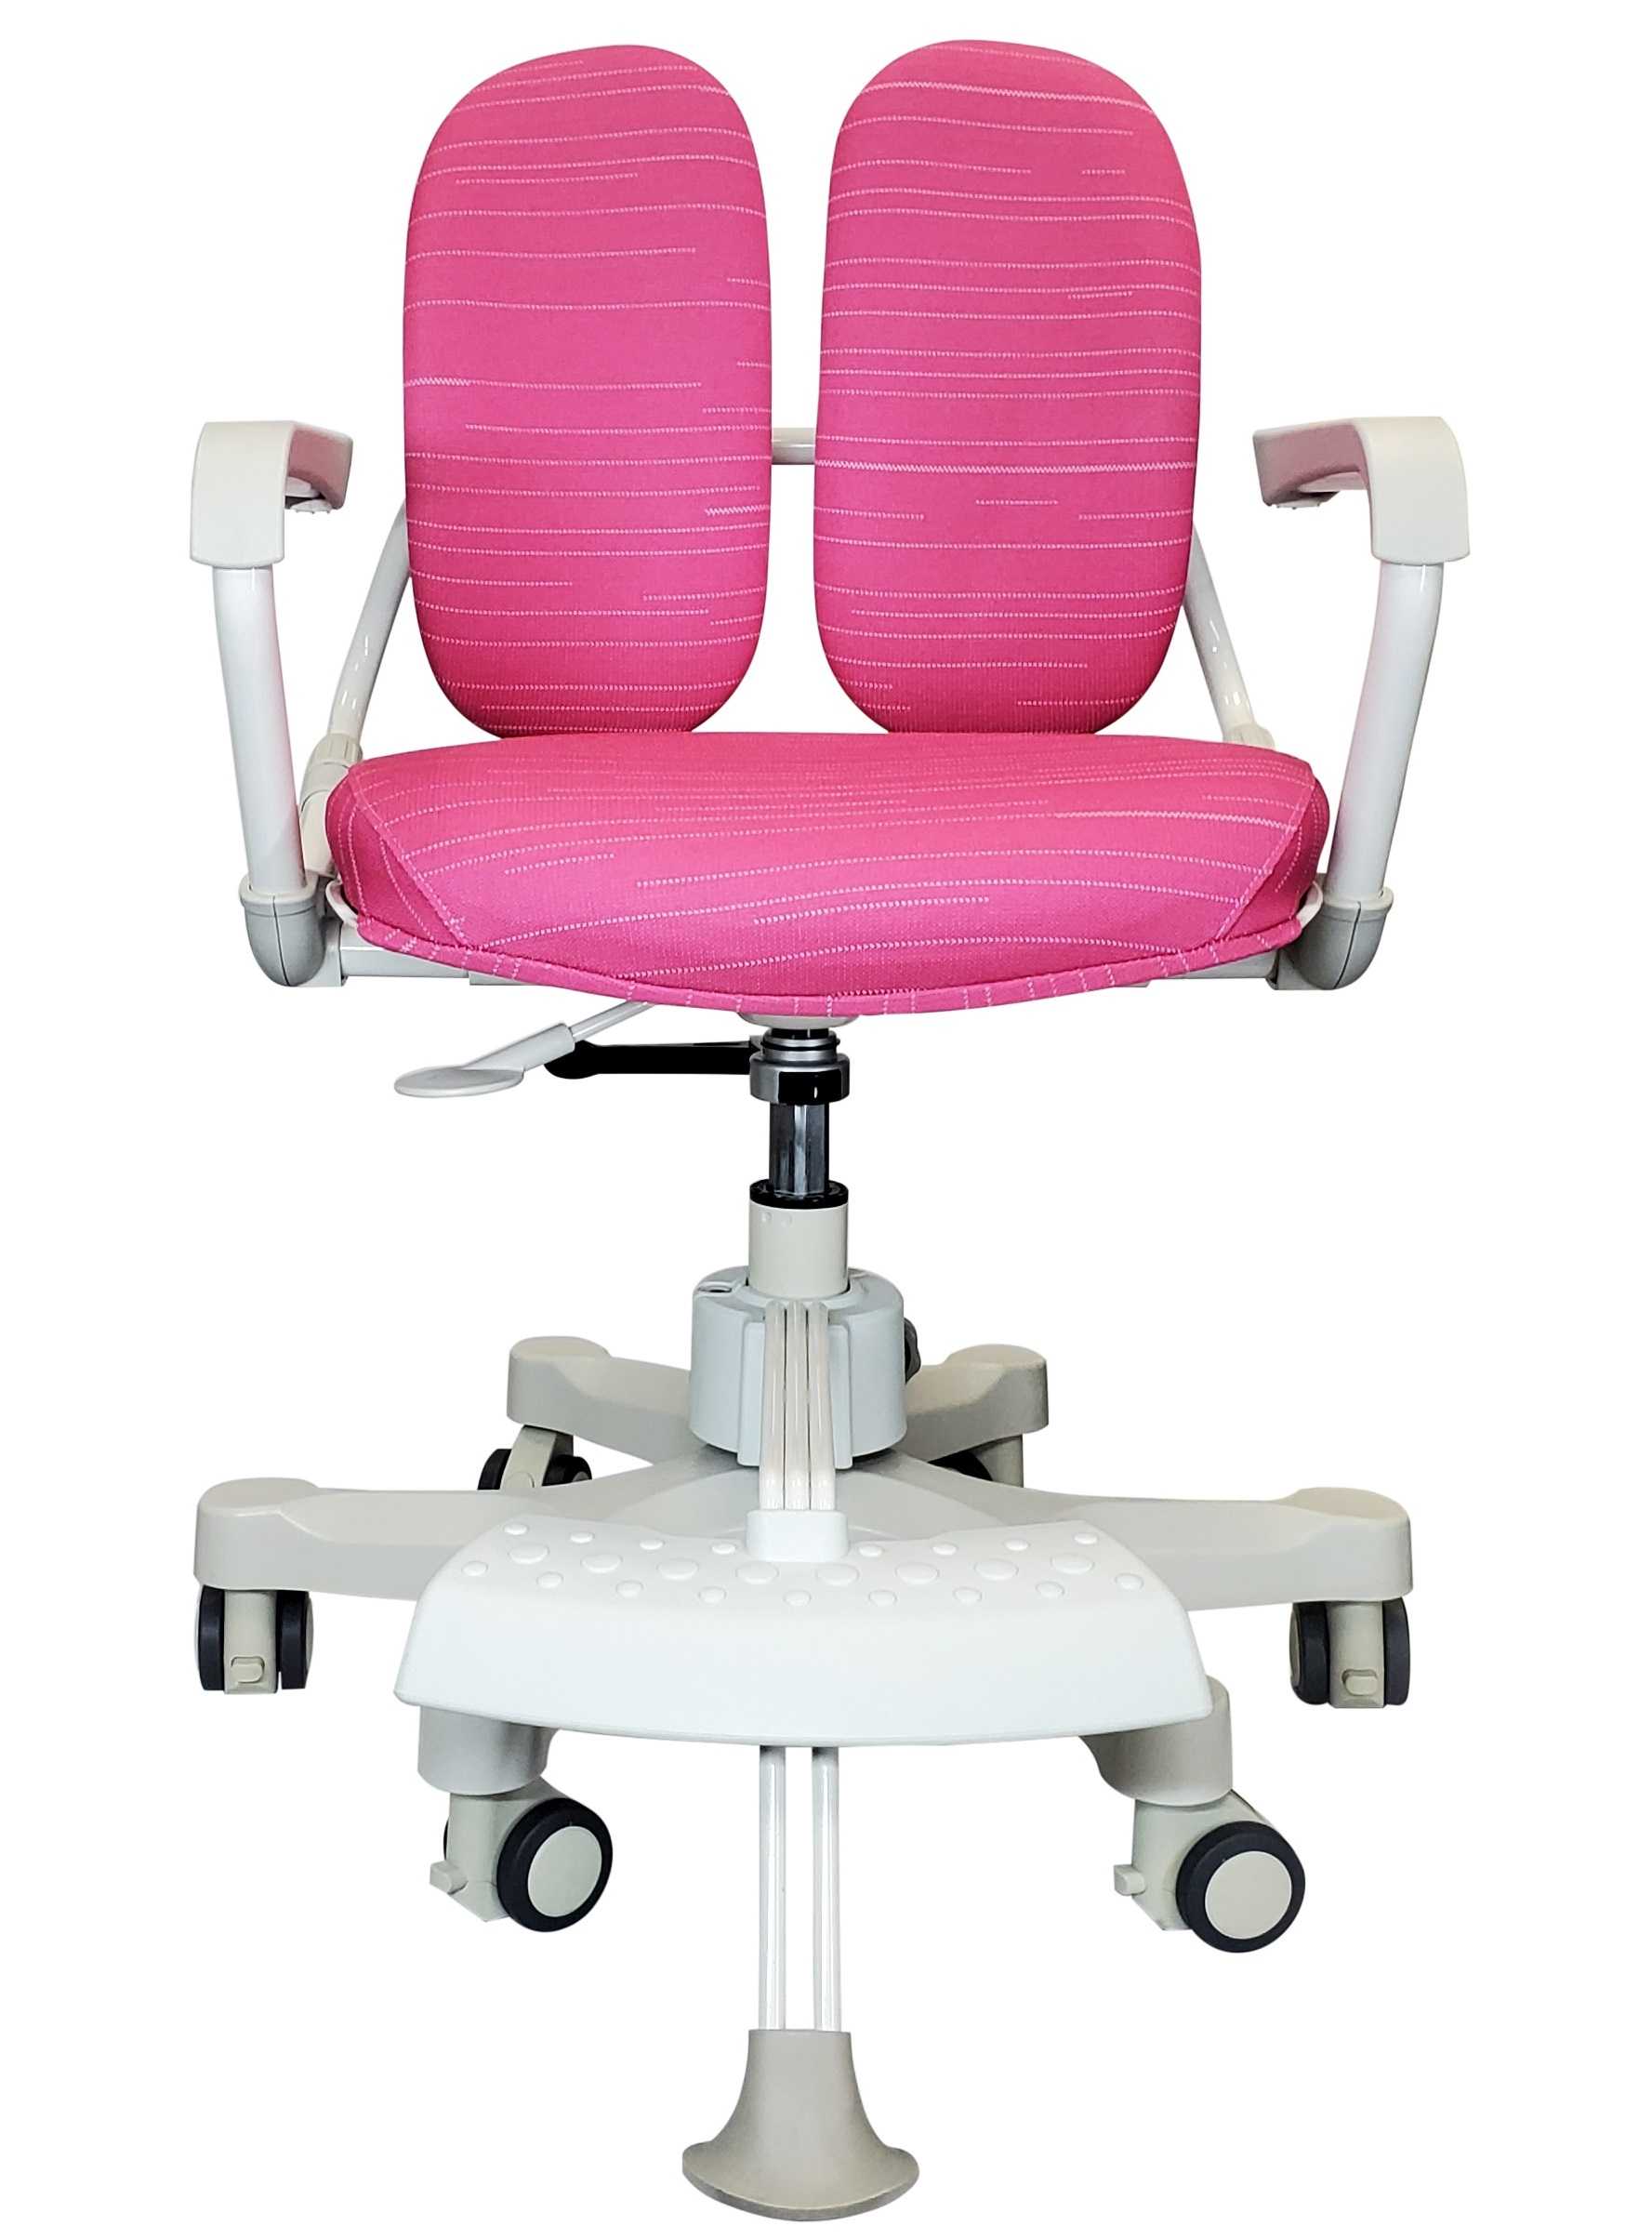 Ортопедические кресла: стулья для отдыха дома, duorest и другие популярные марки